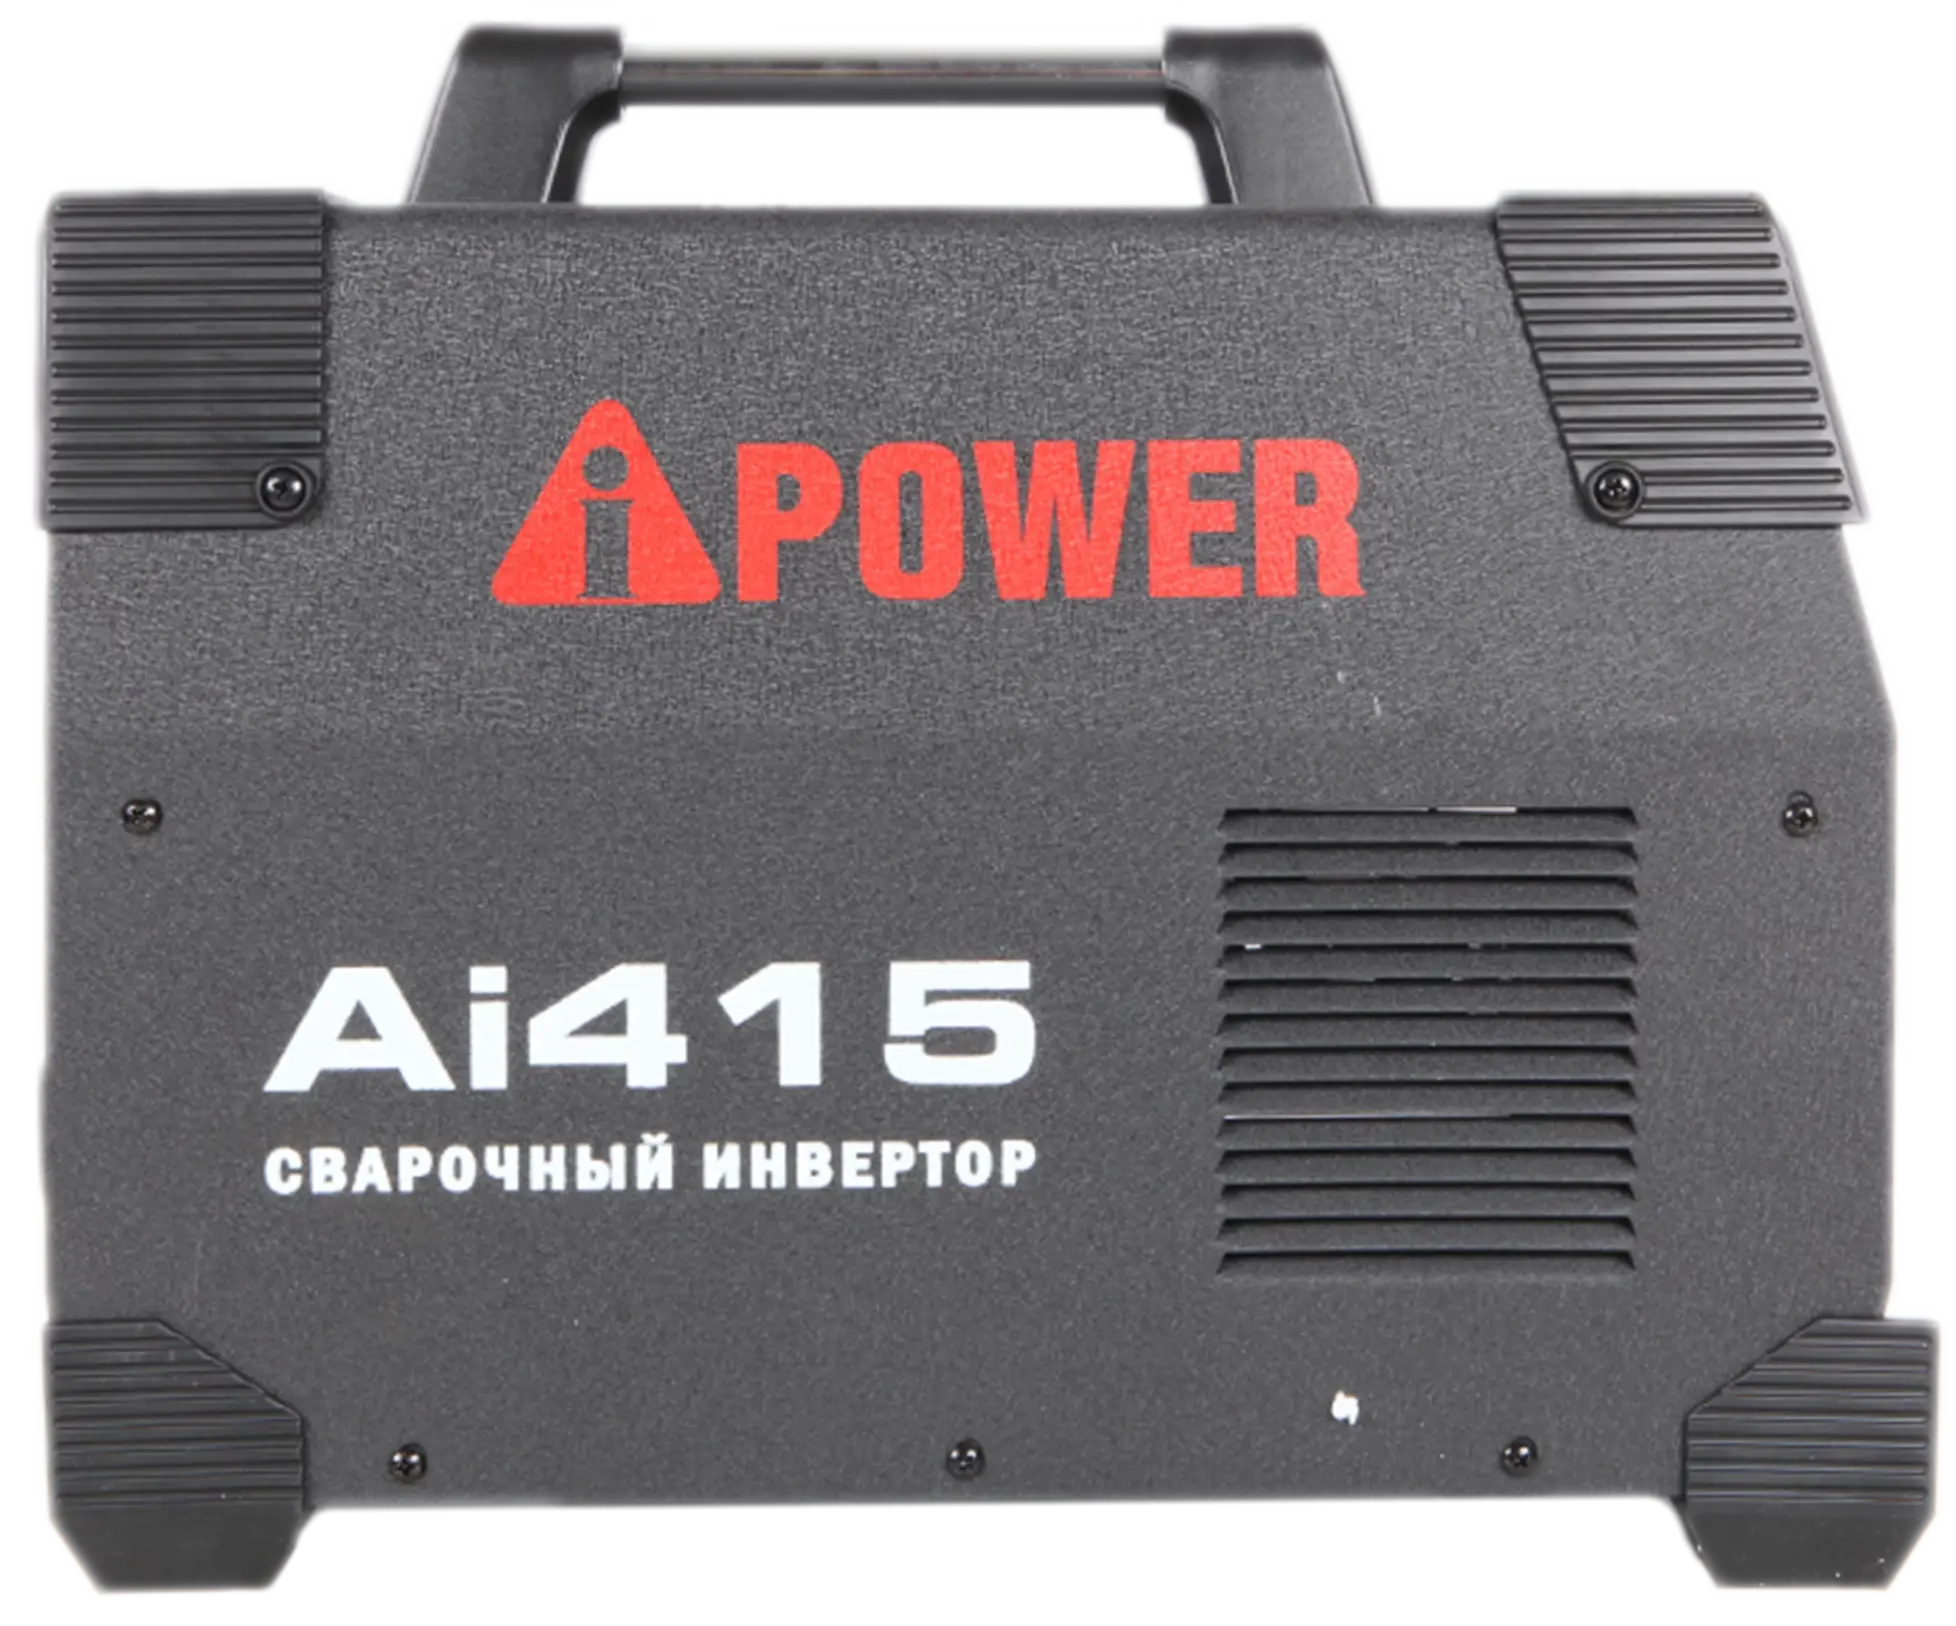 Инверторный сварочный аппарат A-IPOWER AI415 Гарантия 4 года Официальный магазин